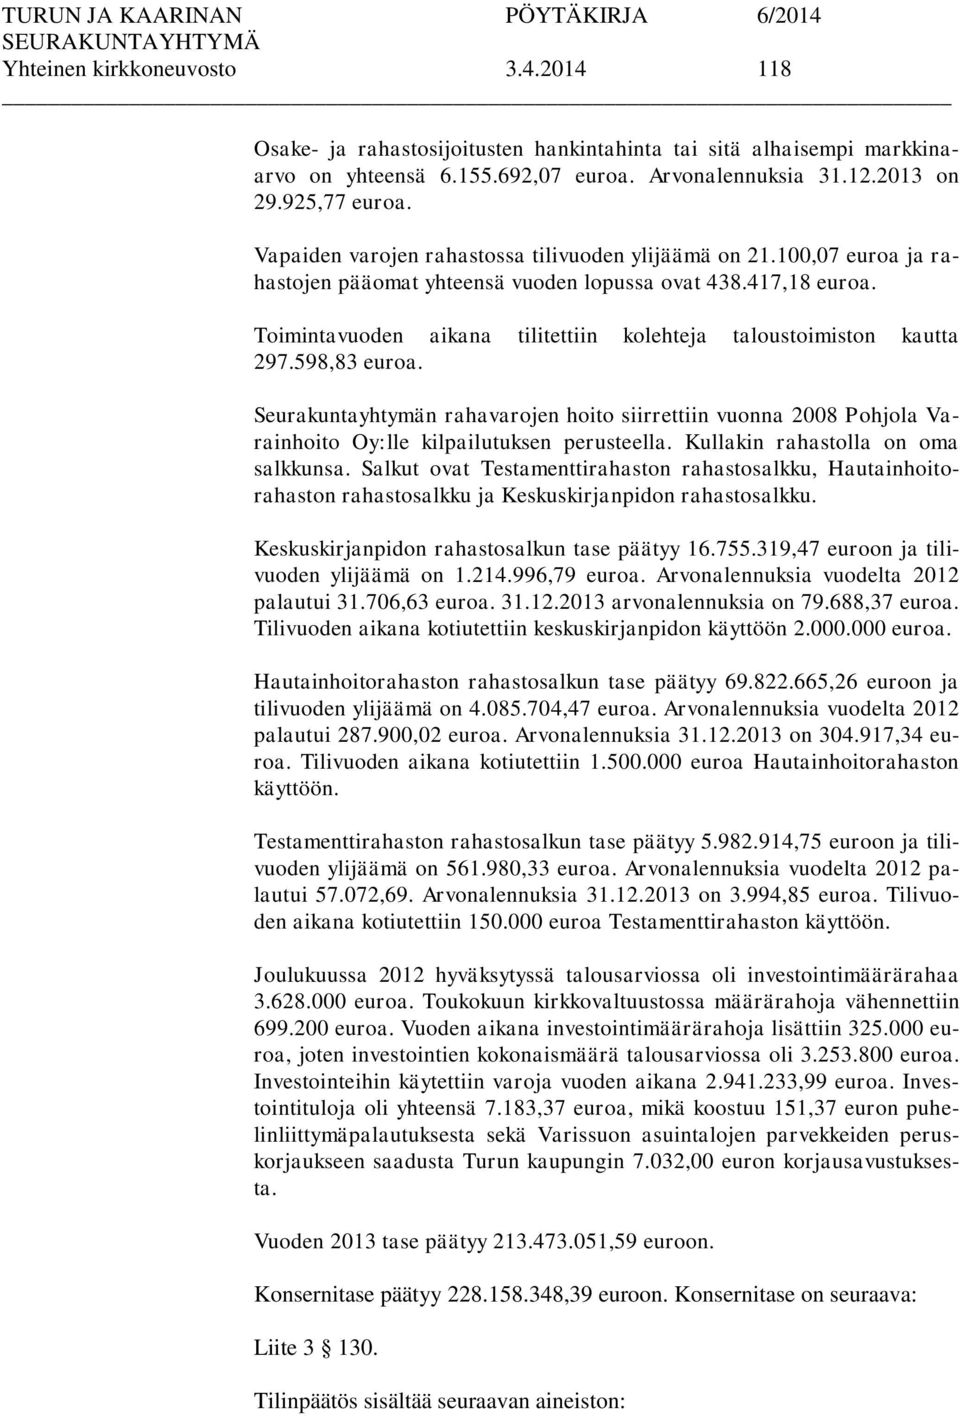 Toimintavuoden aikana tilitettiin kolehteja taloustoimiston kautta 297.598,83 euroa. Seurakuntayhtymän rahavarojen hoito siirrettiin vuonna 2008 Pohjola Varainhoito Oy:lle kilpailutuksen perusteella.